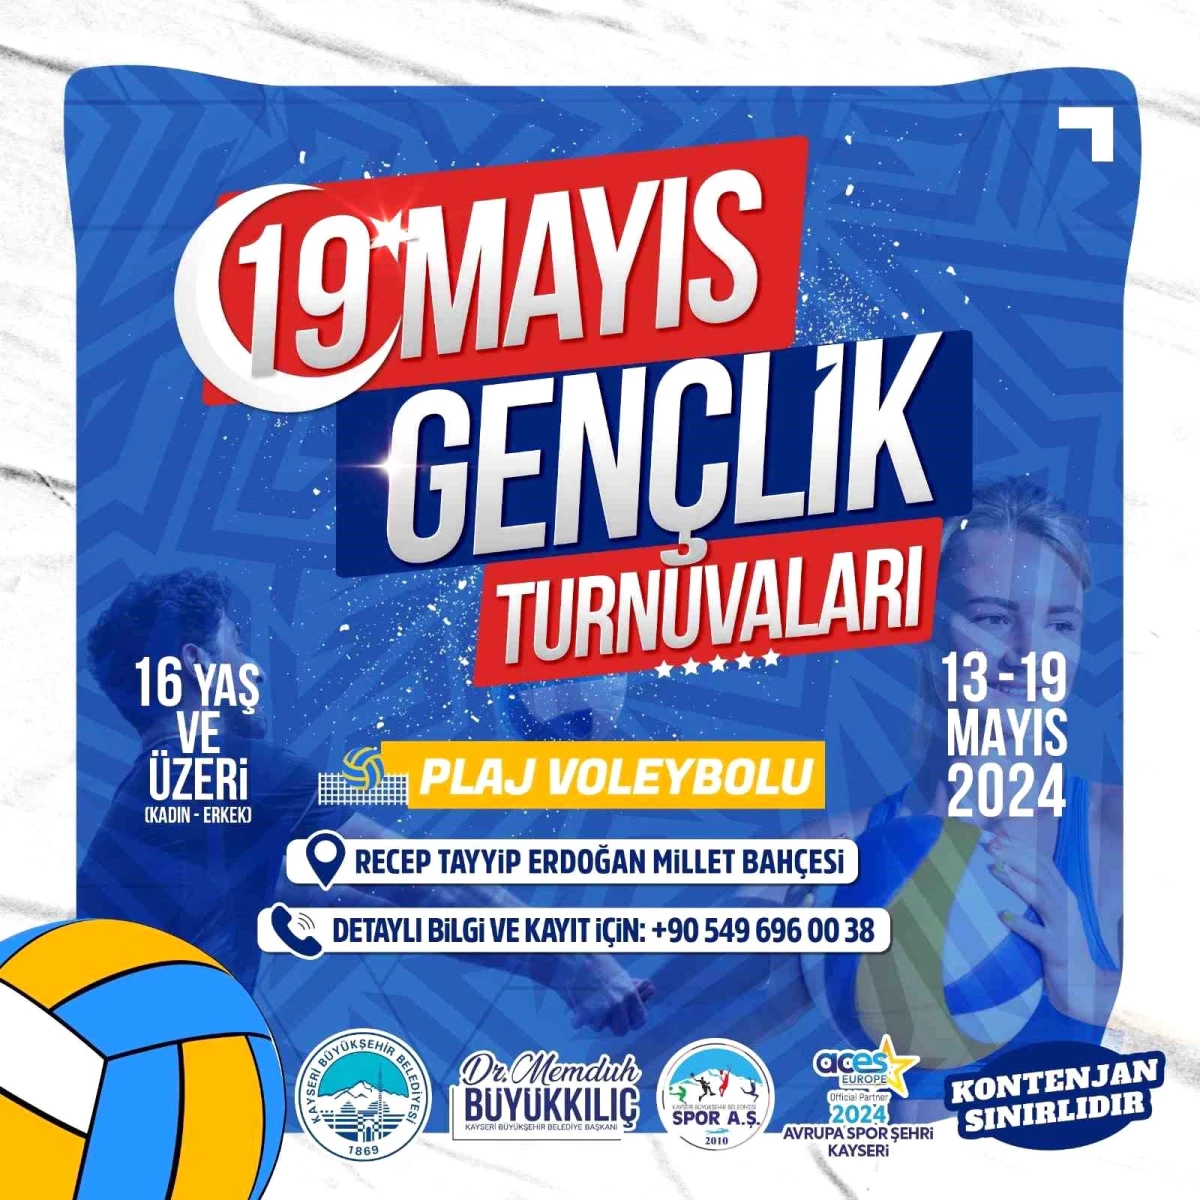 Kayseri Büyükşehir Belediyesi, 19 Mayıs Gençlik Turnuvası Plaj Voleybolu düzenliyor